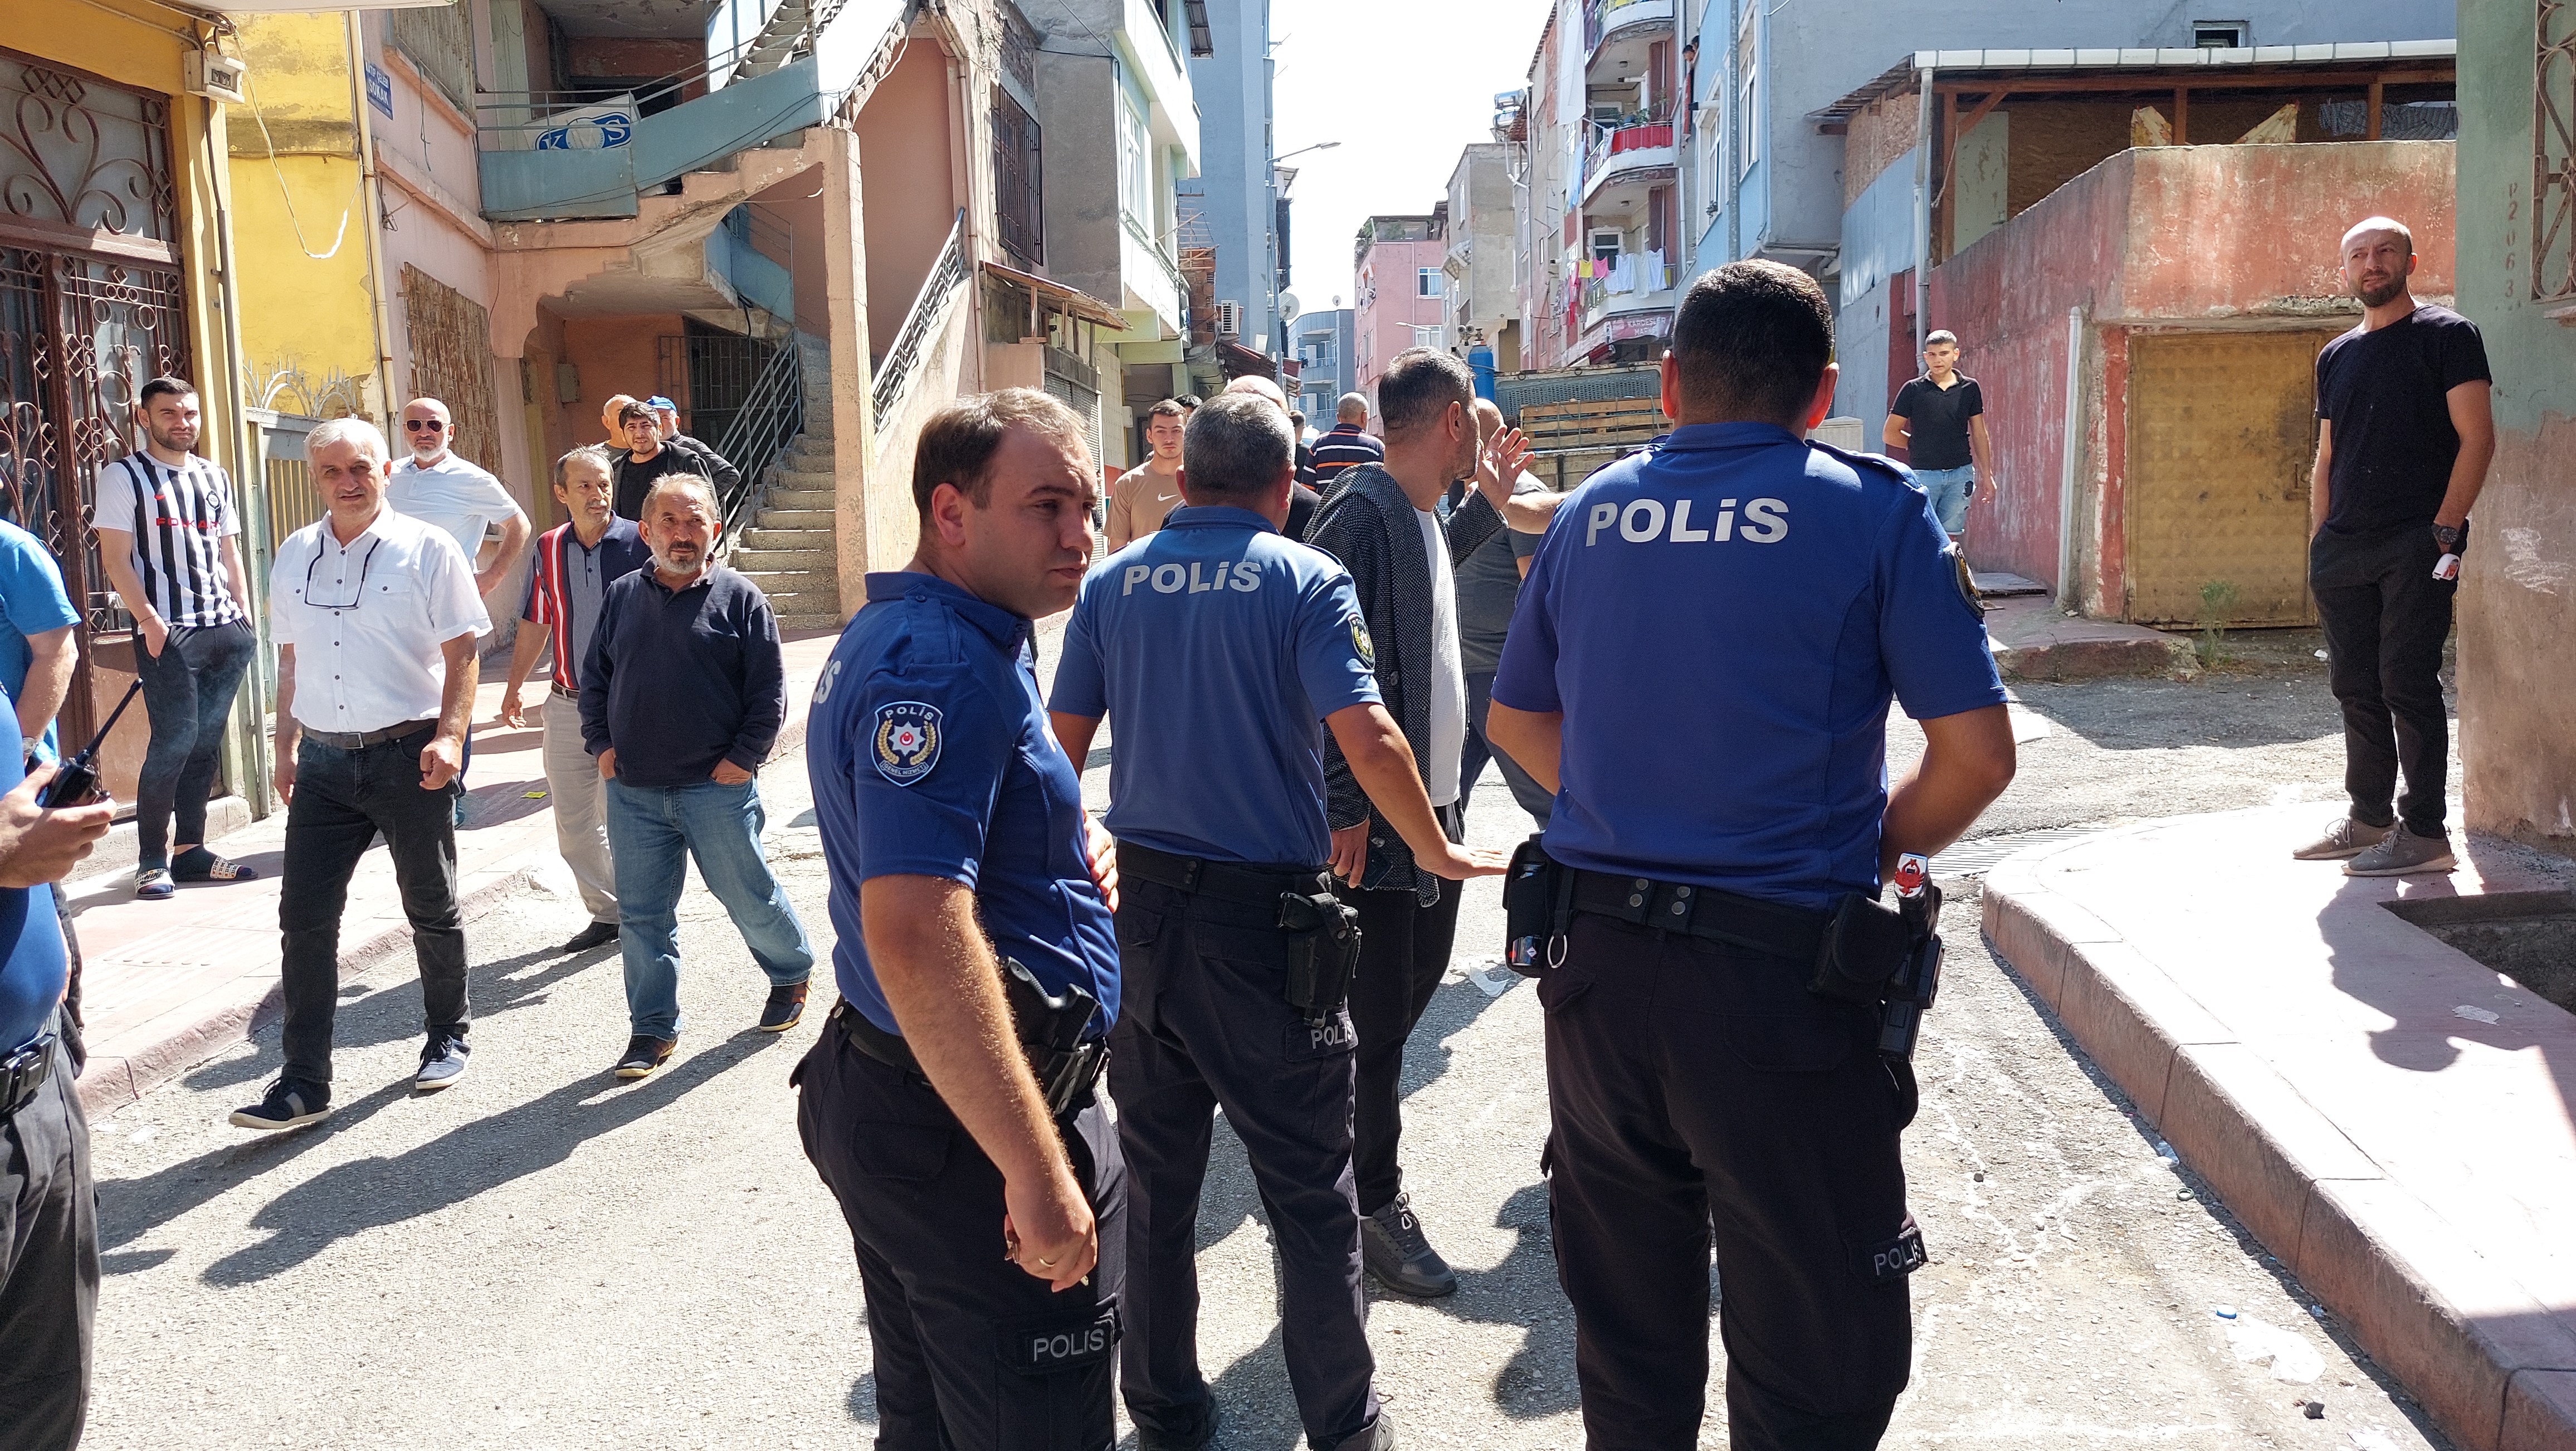 Samsun’da küçük çocuğa cinsel istismar iddiası Şahsa mahalle sakinlerinden linç girişimi